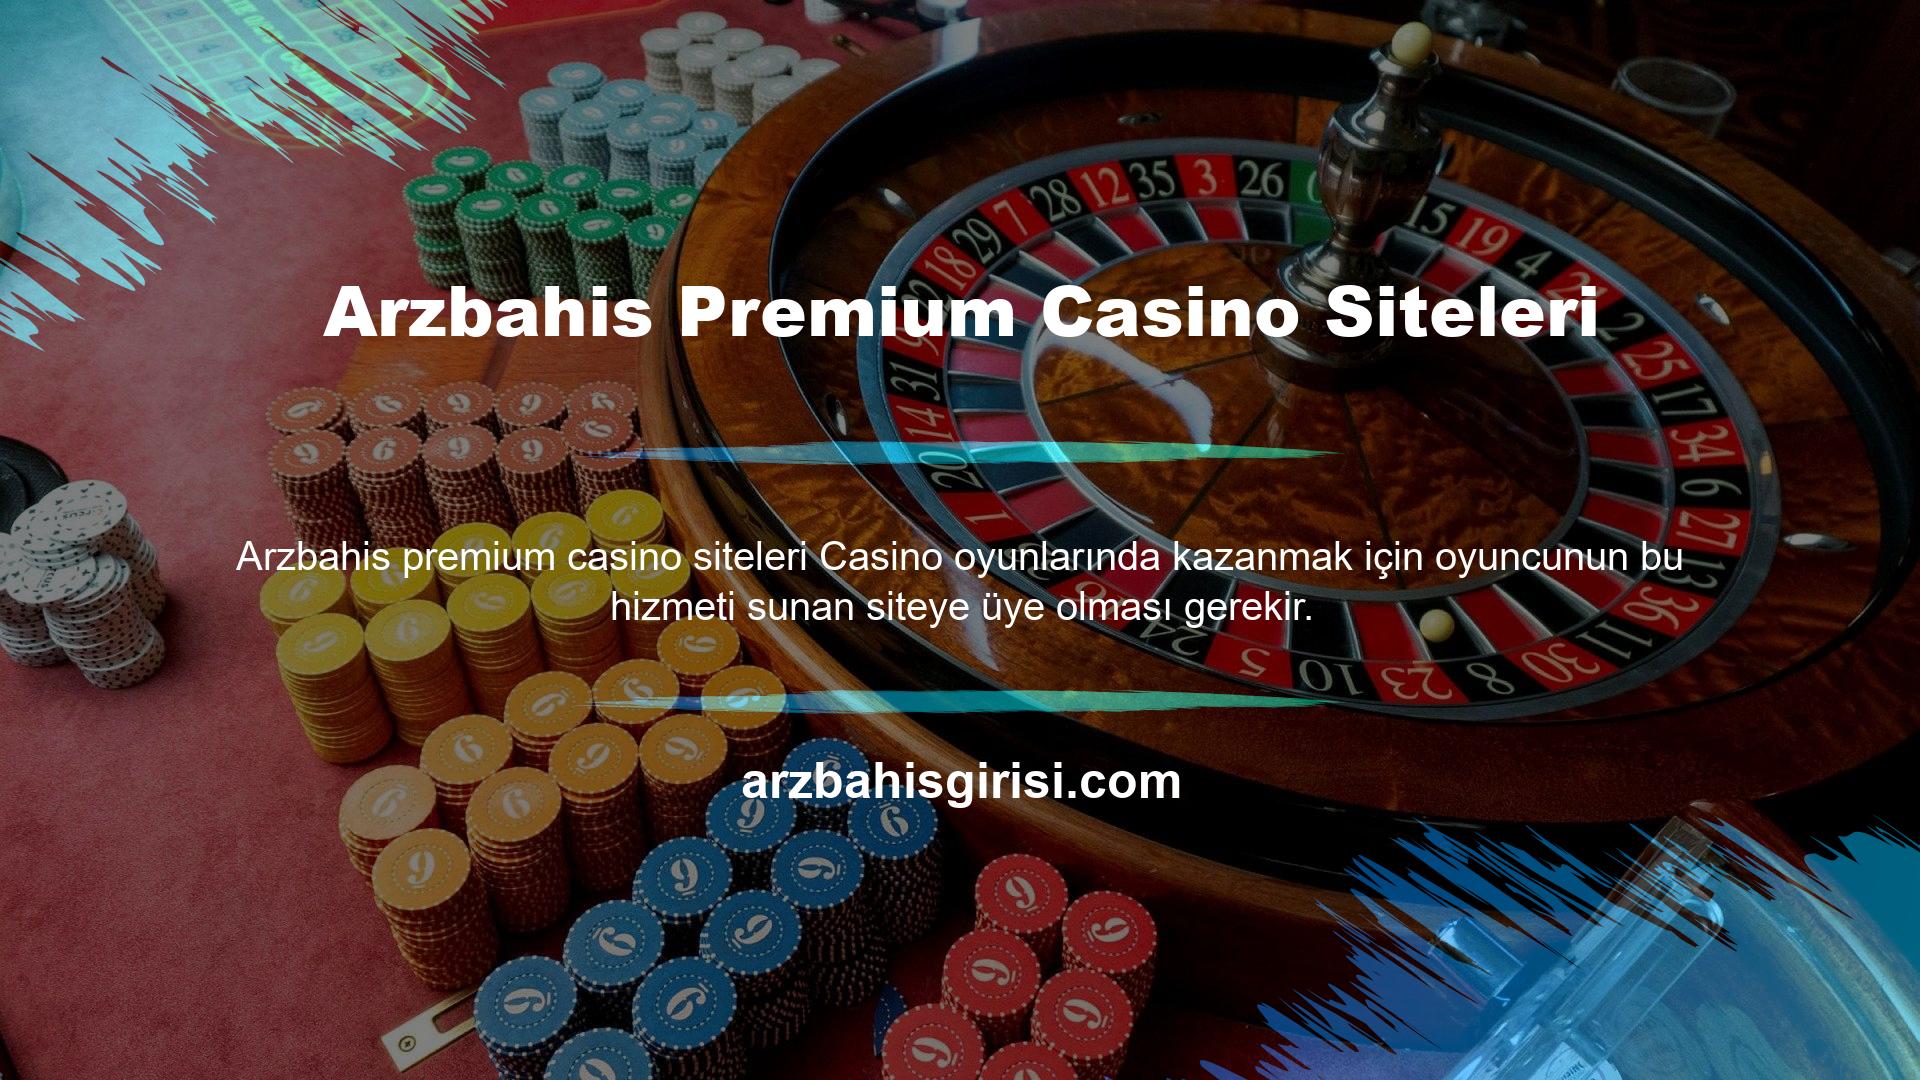 Arzbahis Premium Casino Siteleri Üyelik ücretsiz ve son derece basit bir işlemdir